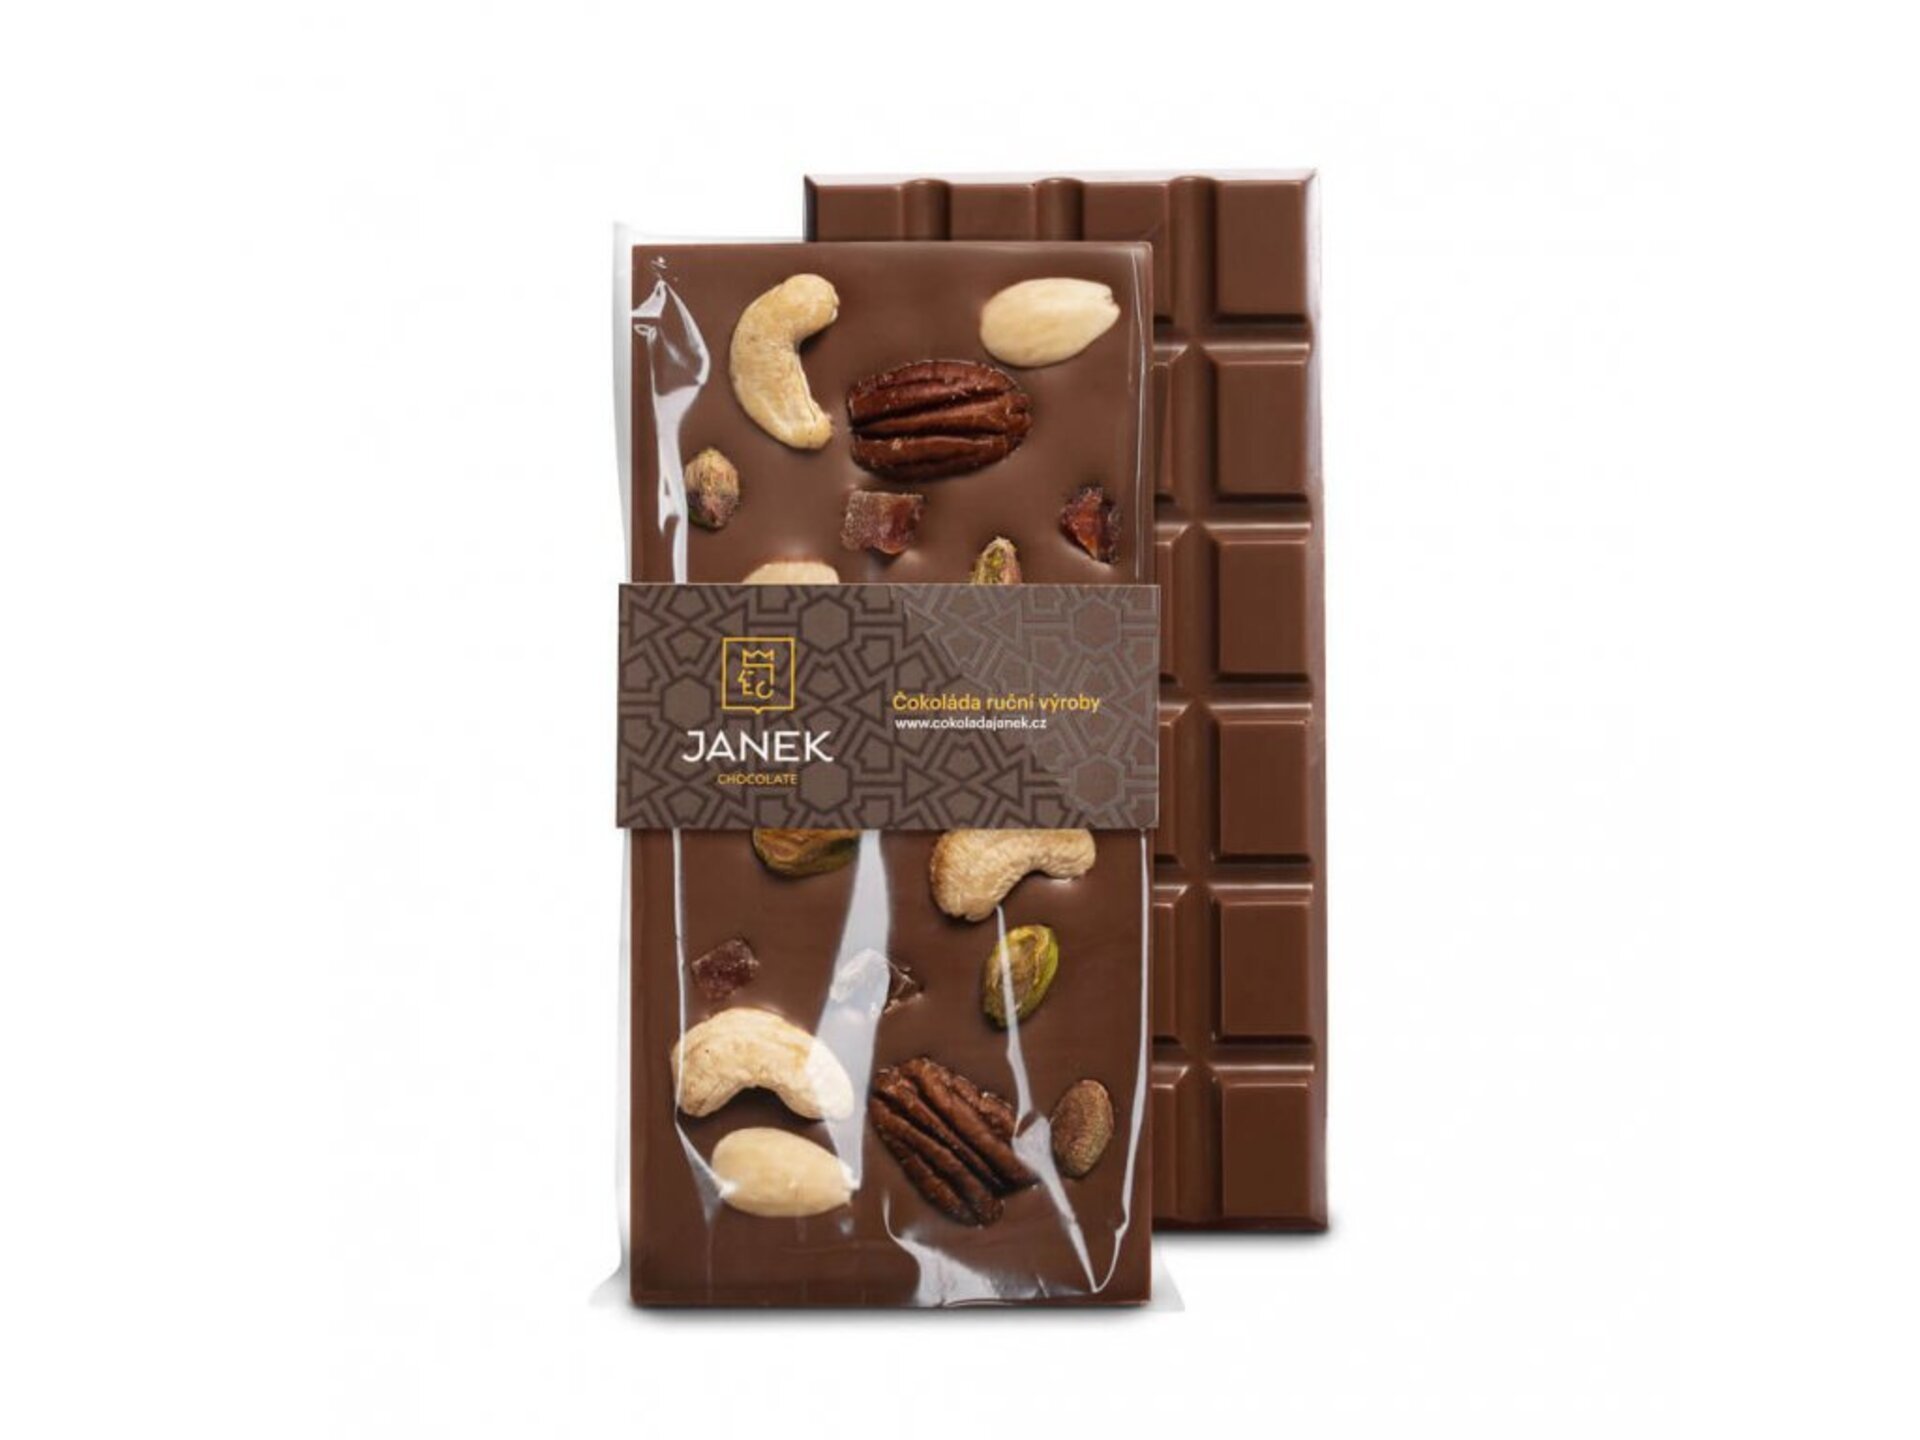 E-shop Čokoládovňa Janek Mliečna čokoláda Jankova pečať 95 g